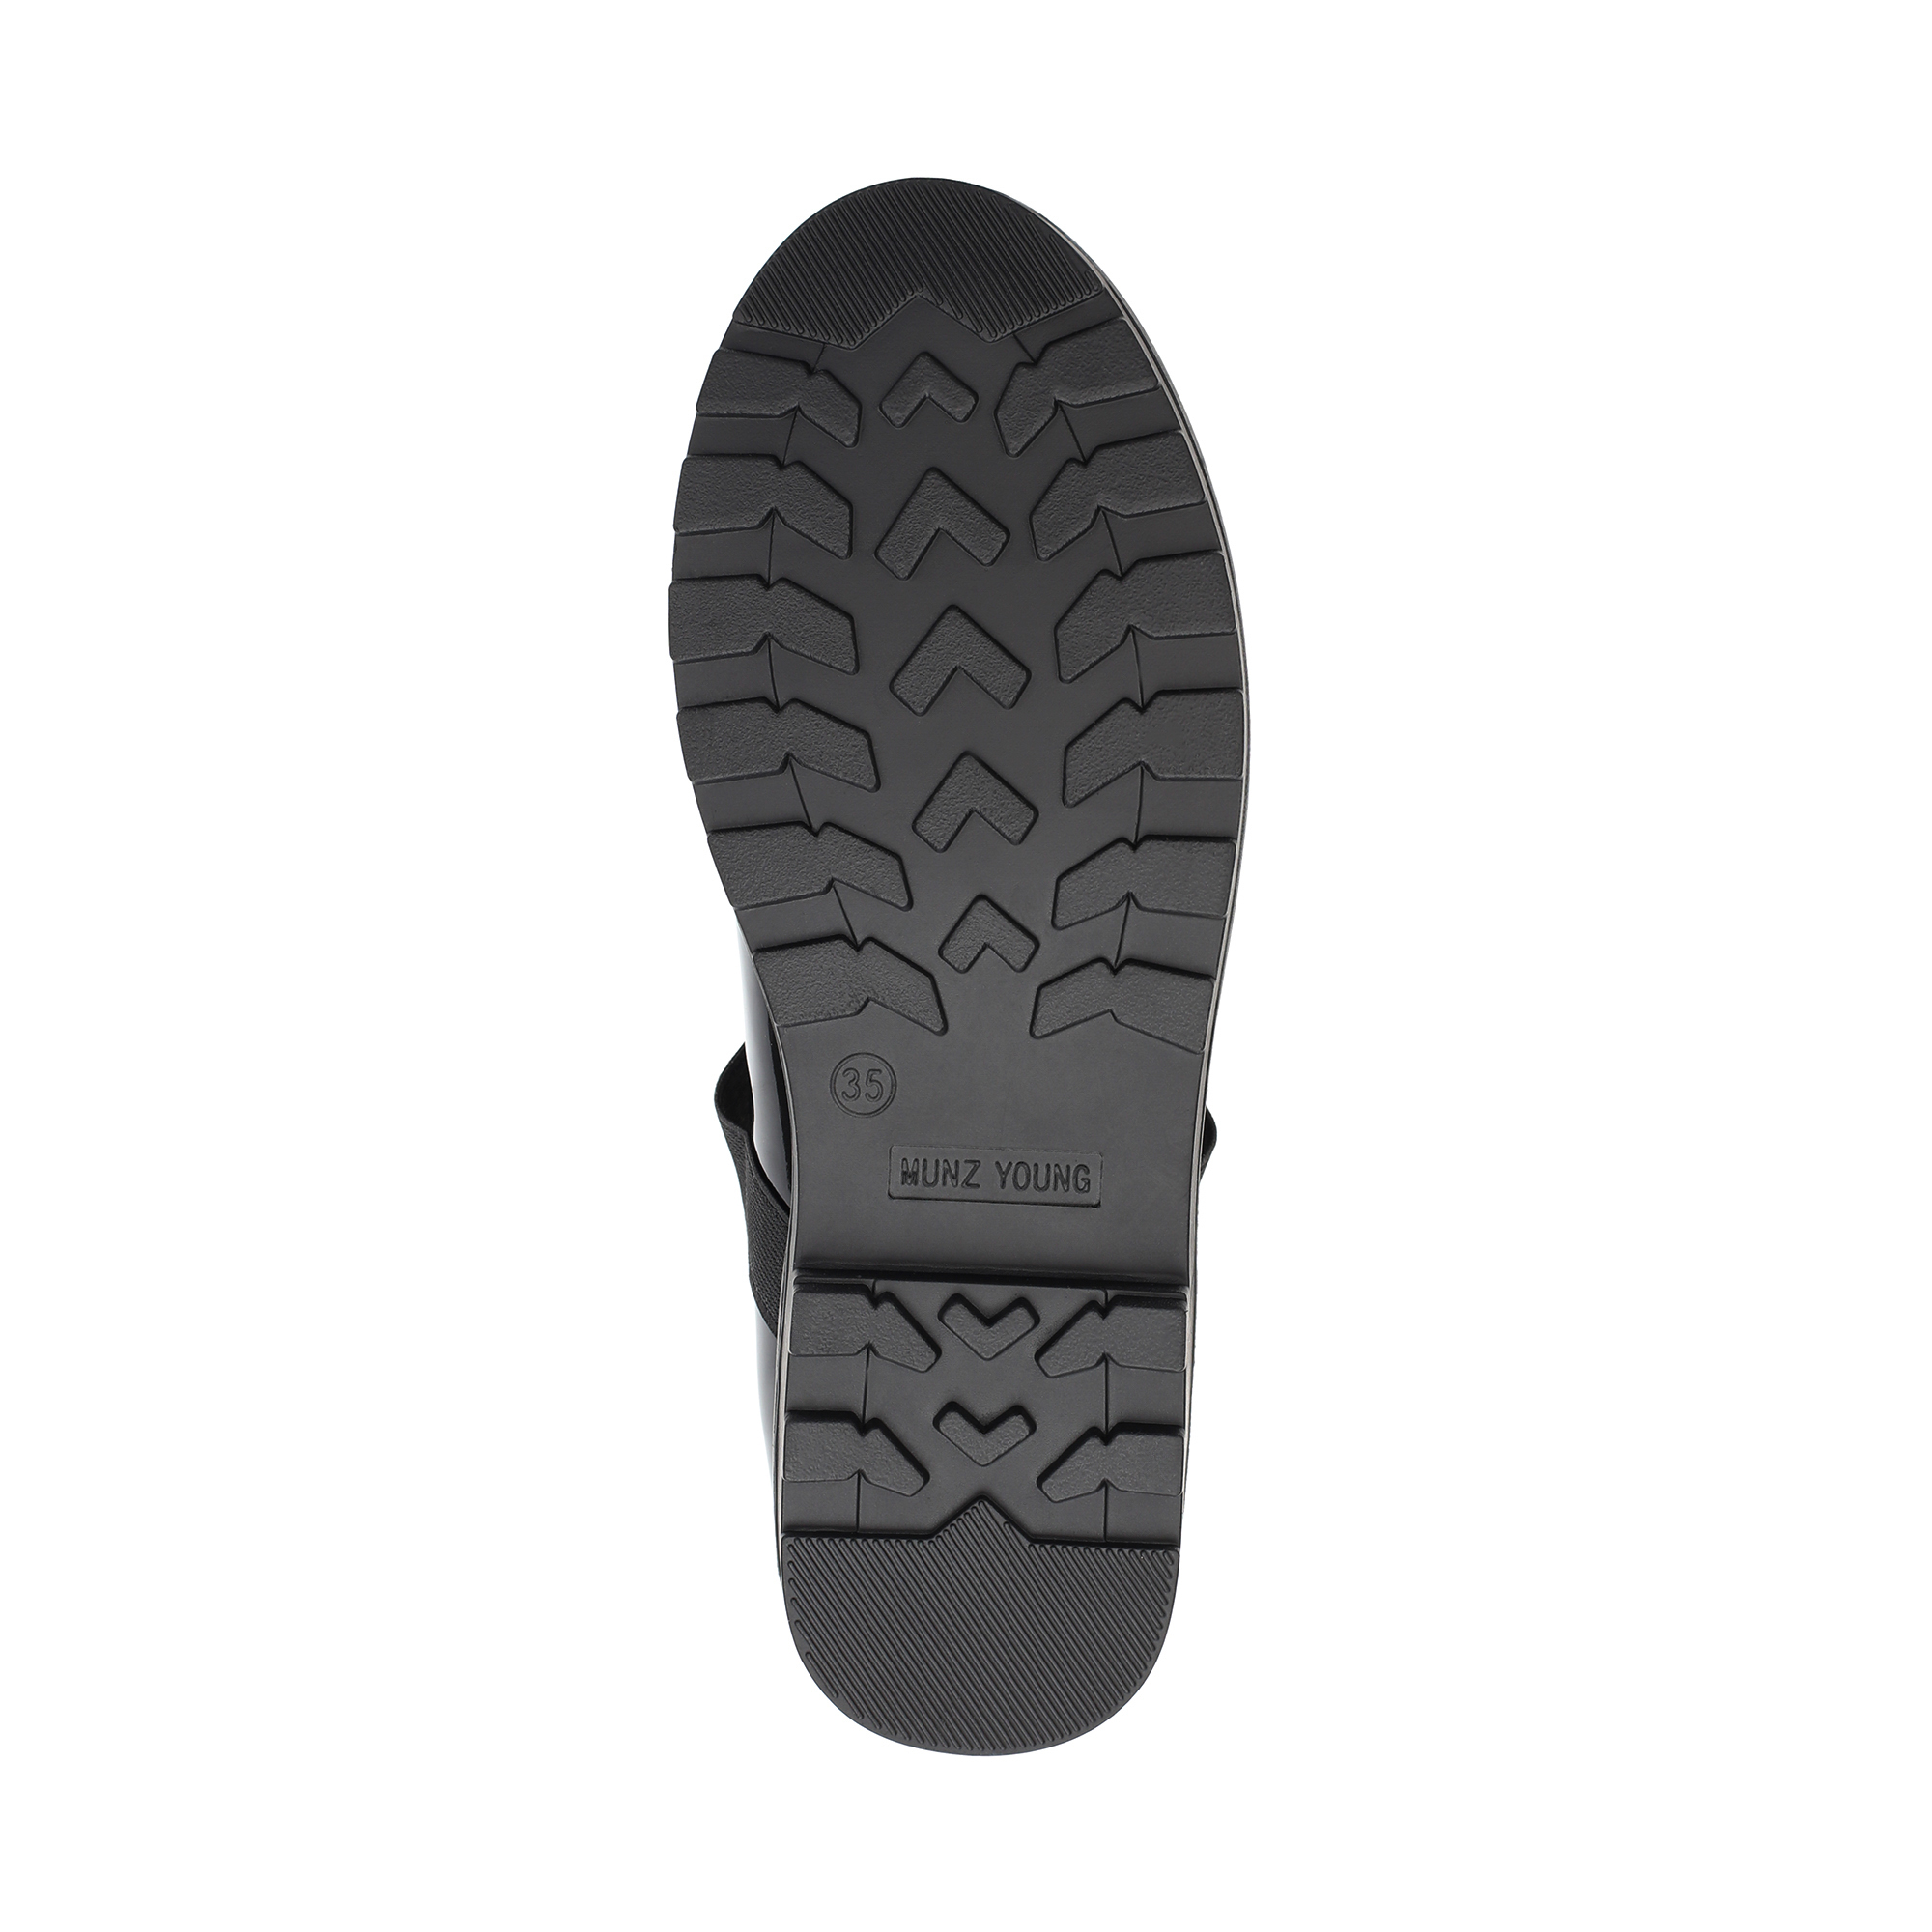 Обувь для девочек MUNZ YOUNG 215-127B-16402, цвет черный, размер 35 - фото 4